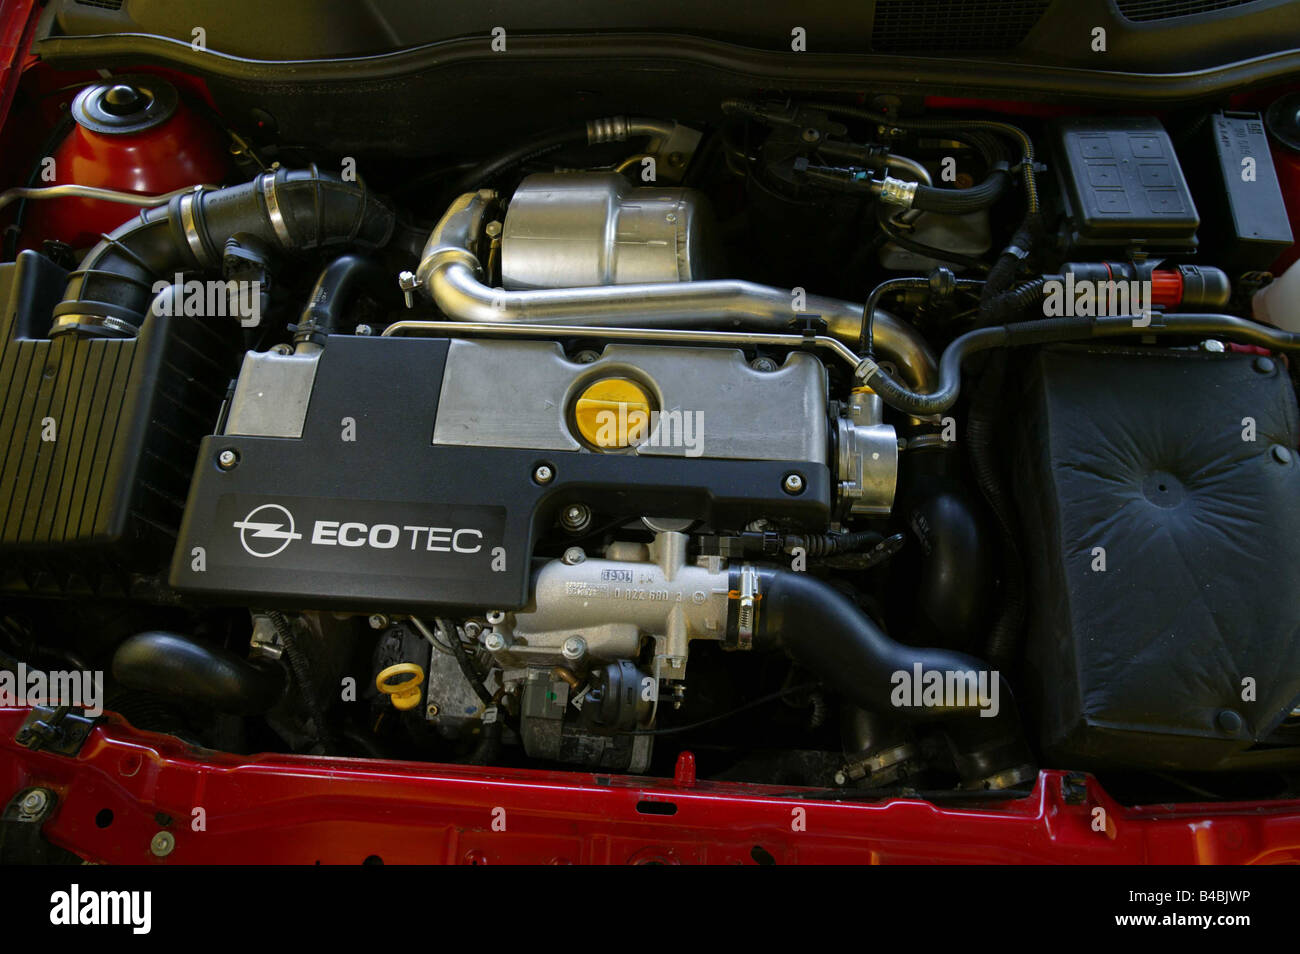 Voiture, Opel Astra cabriolet, moteur diesel, l'année de modèle 2000-,  orange , open top, vue dans le compartiment moteur, moteur, technique/a  Photo Stock - Alamy